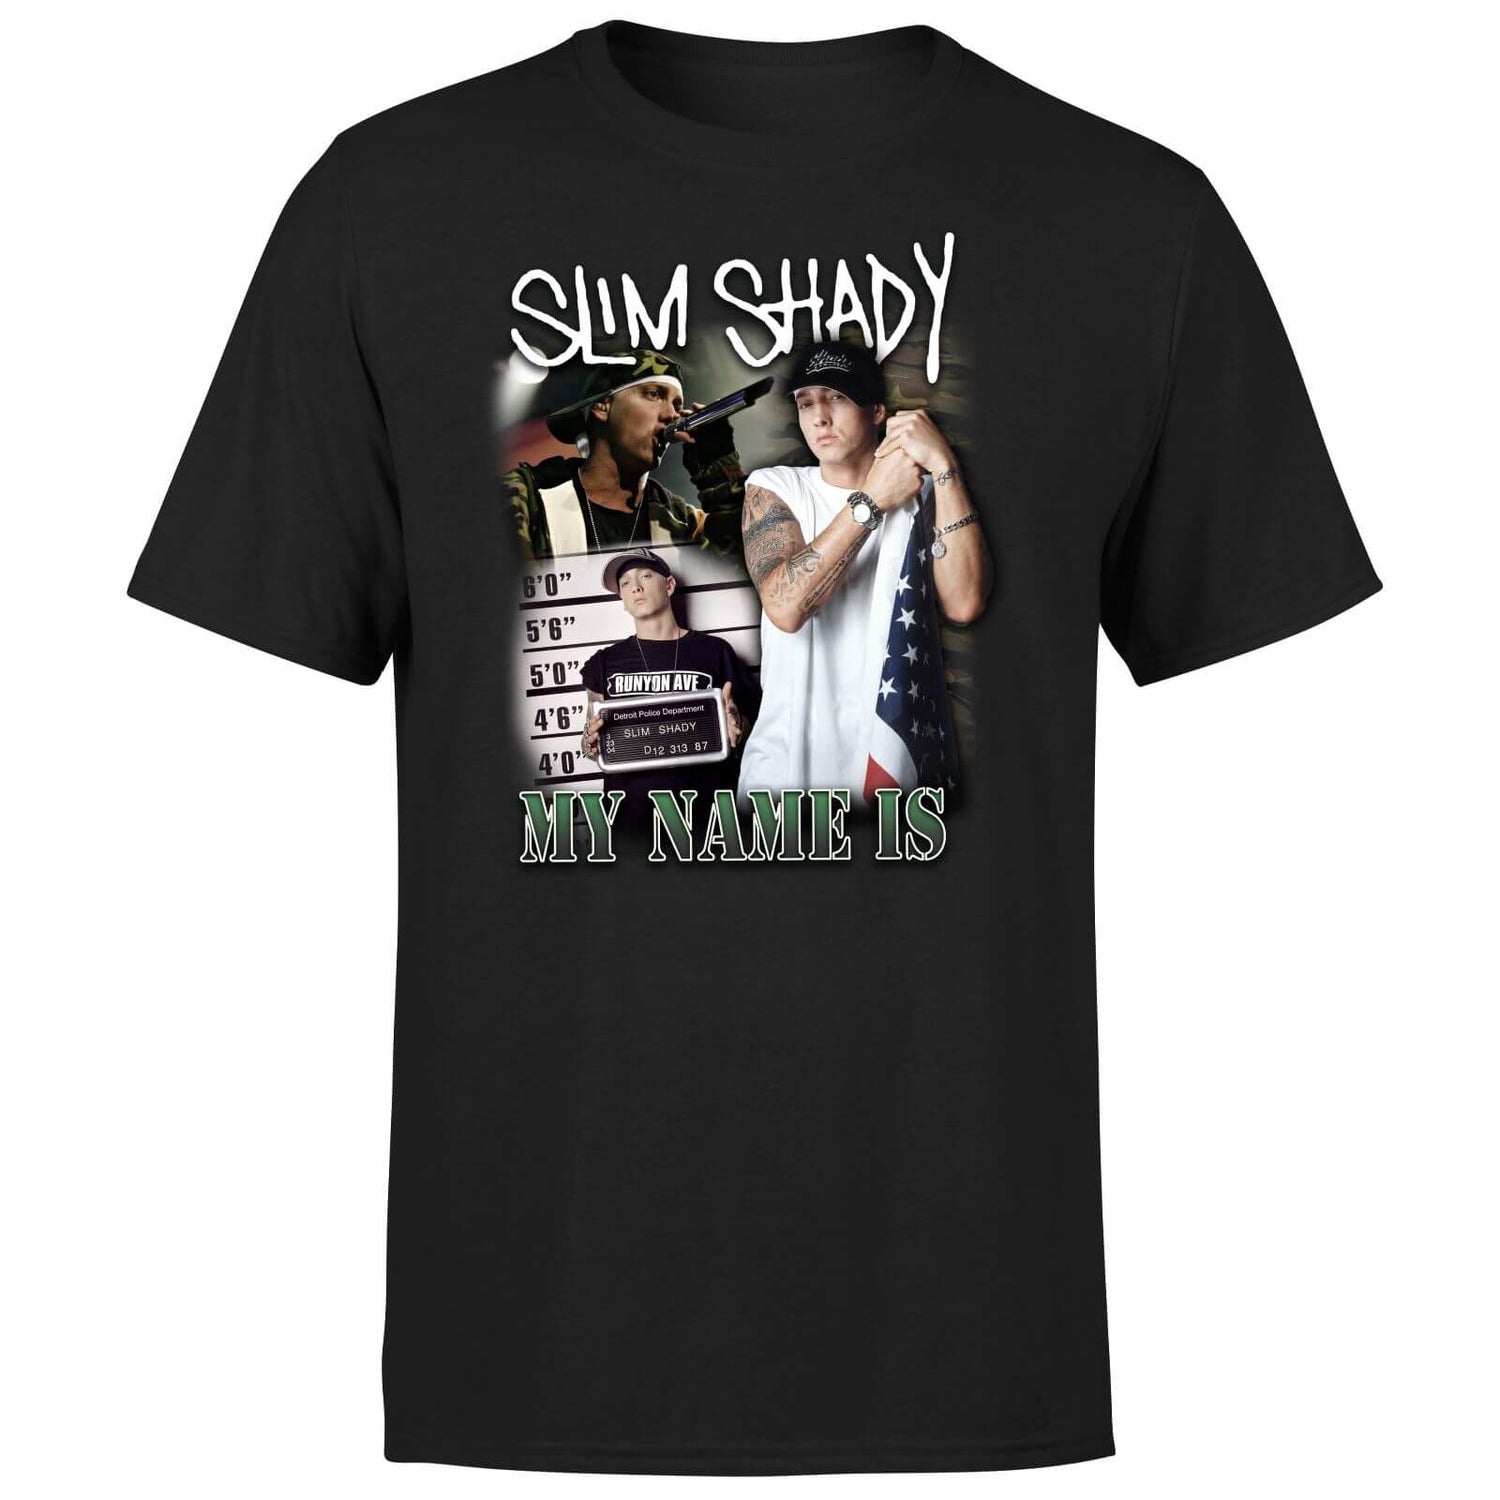 My Name Is Slim Shady Men's T-Shirt - Black Clothing - Zavvi US